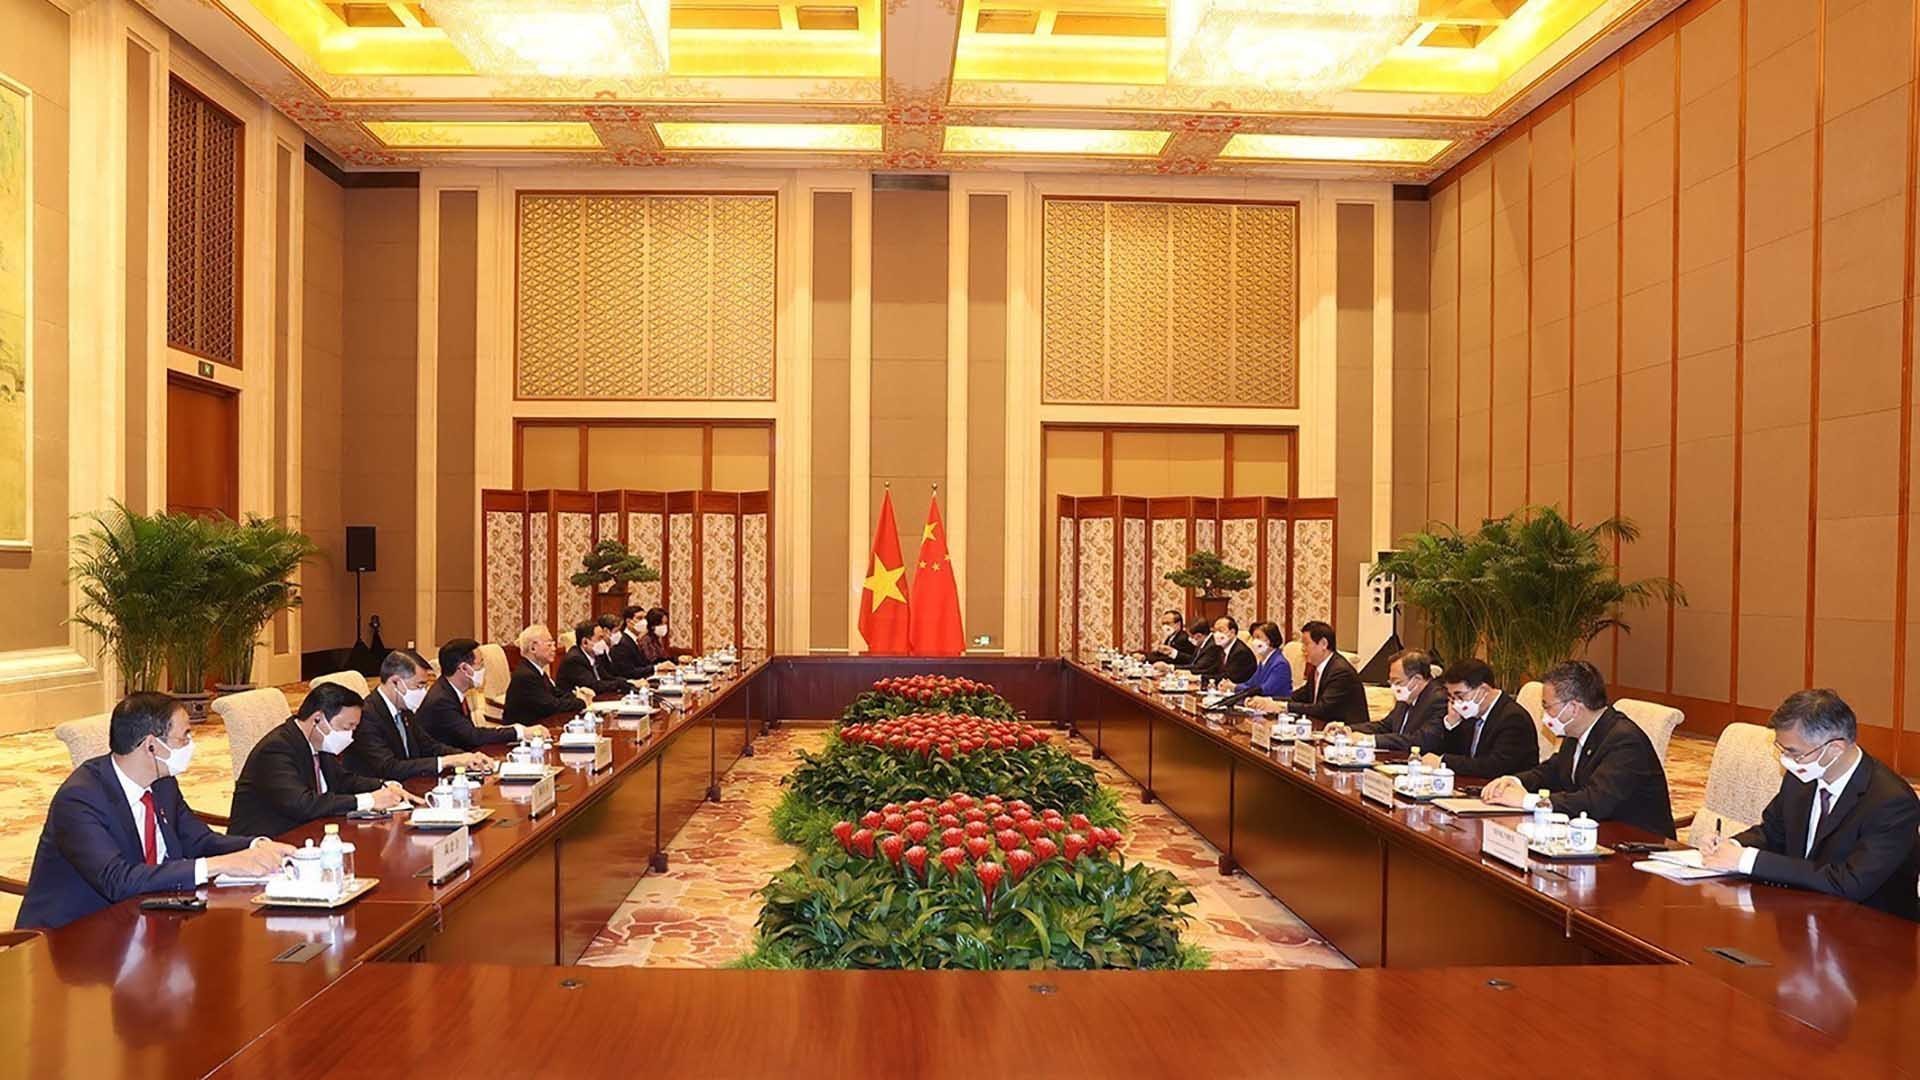 Tổng Bí thư Nguyễn Phú Trọng hội kiến Ủy viên trưởng Ủy ban Thường vụ Đại hội đại biểu nhân dân toàn quốc Trung Quốc